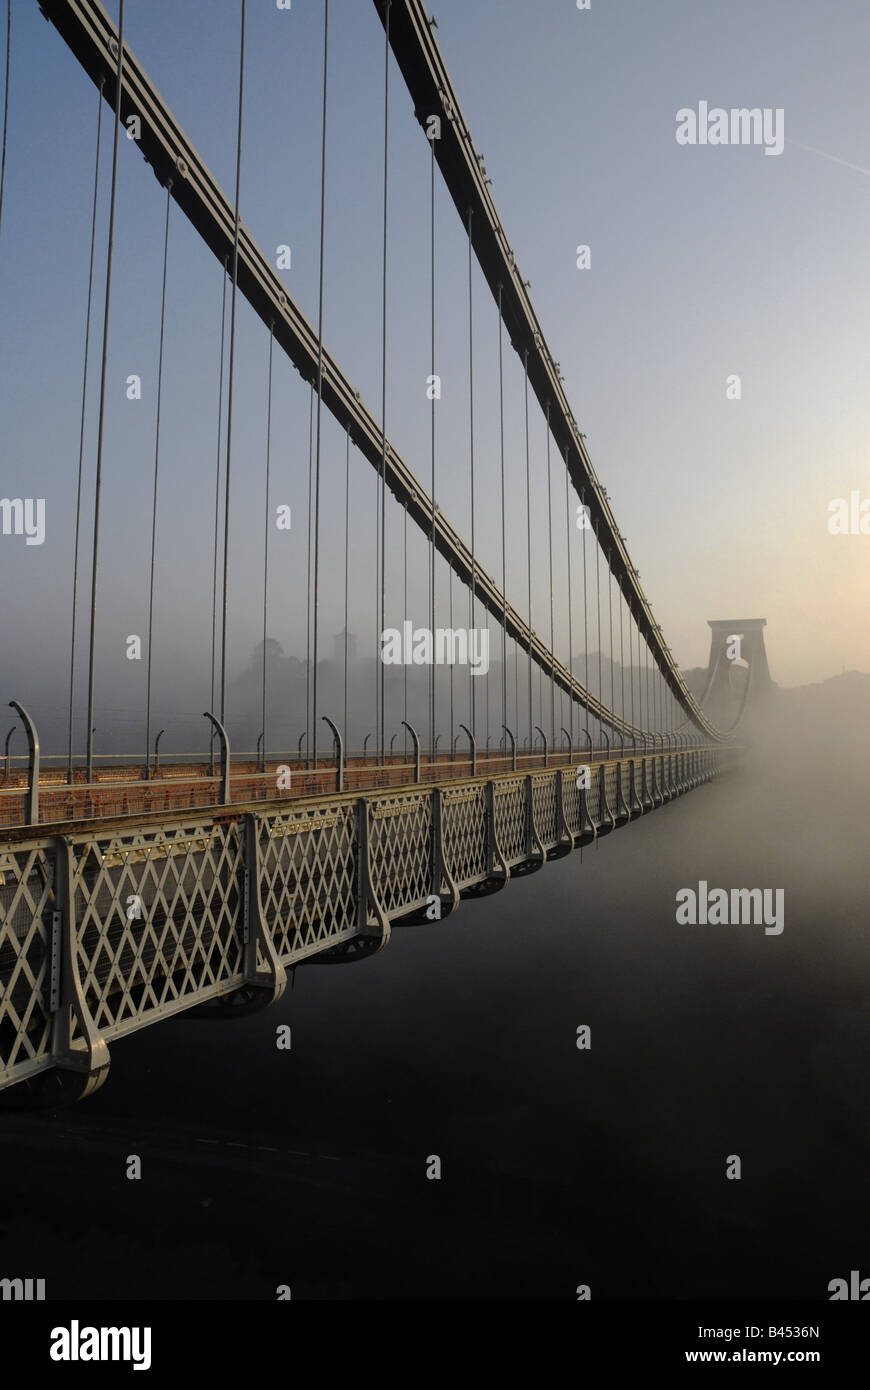 Clifton suspension bridge in Bristol at sunrise Stock Photo